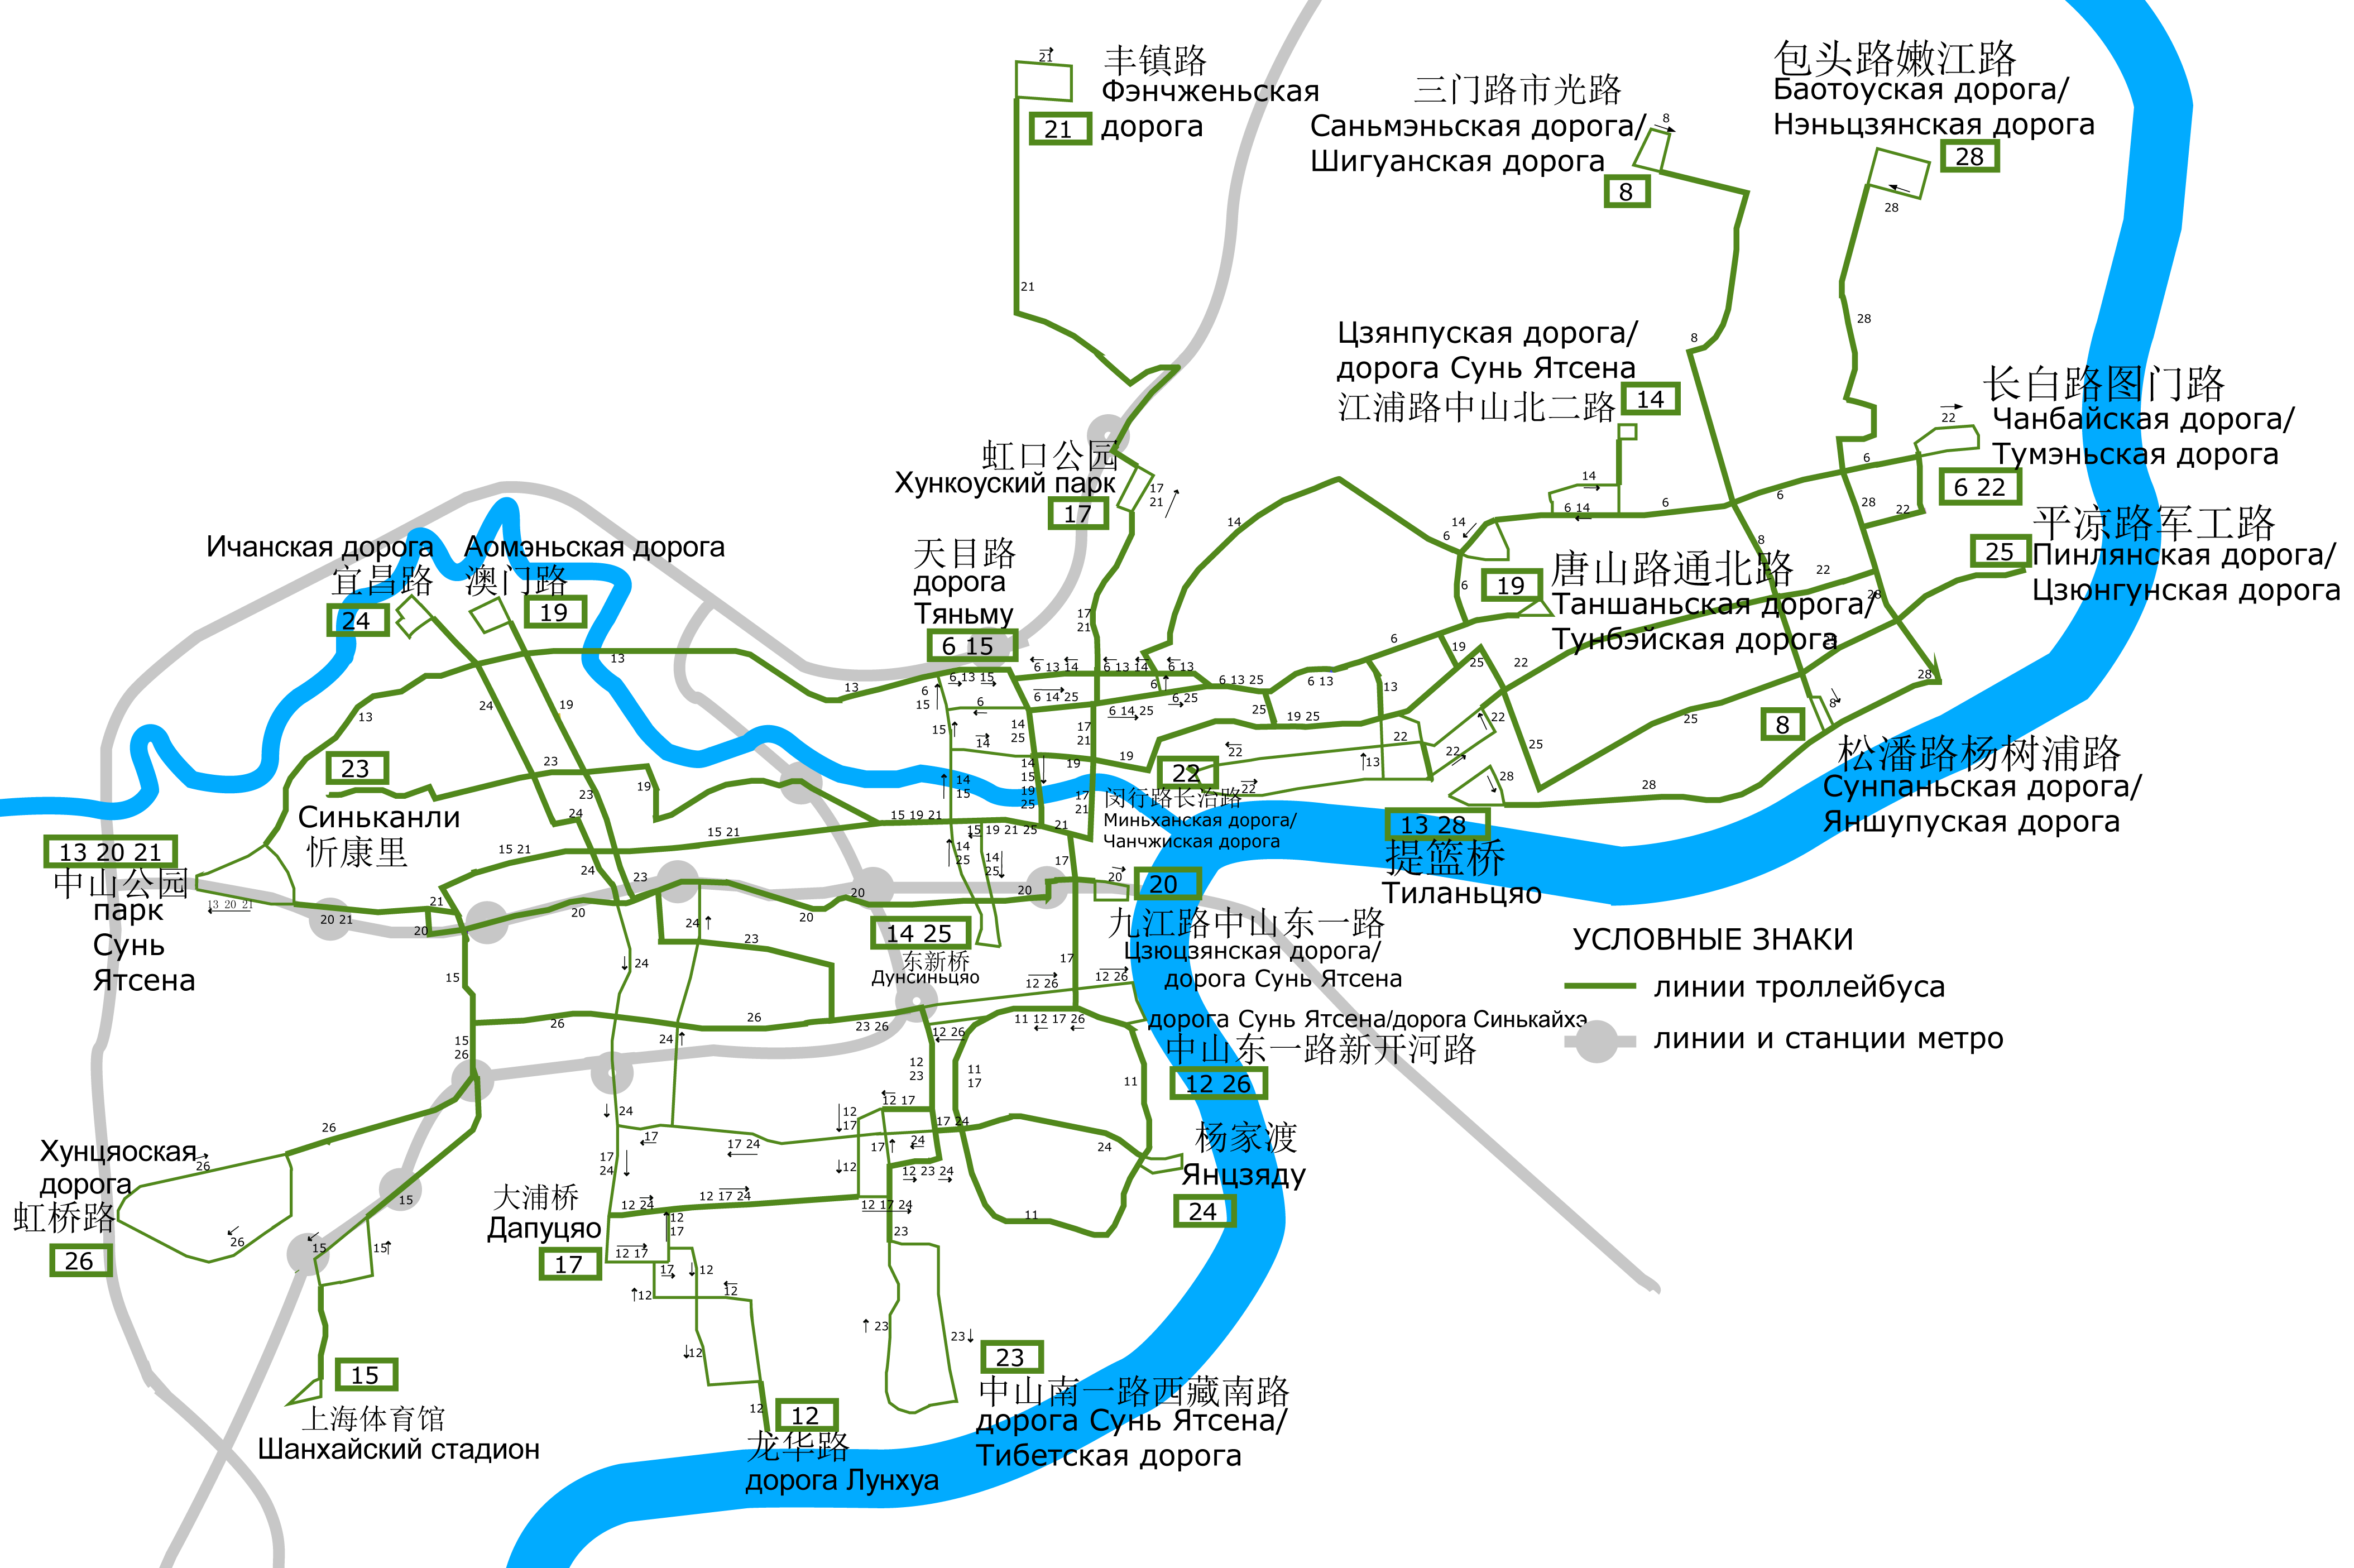 Shanghai — Maps